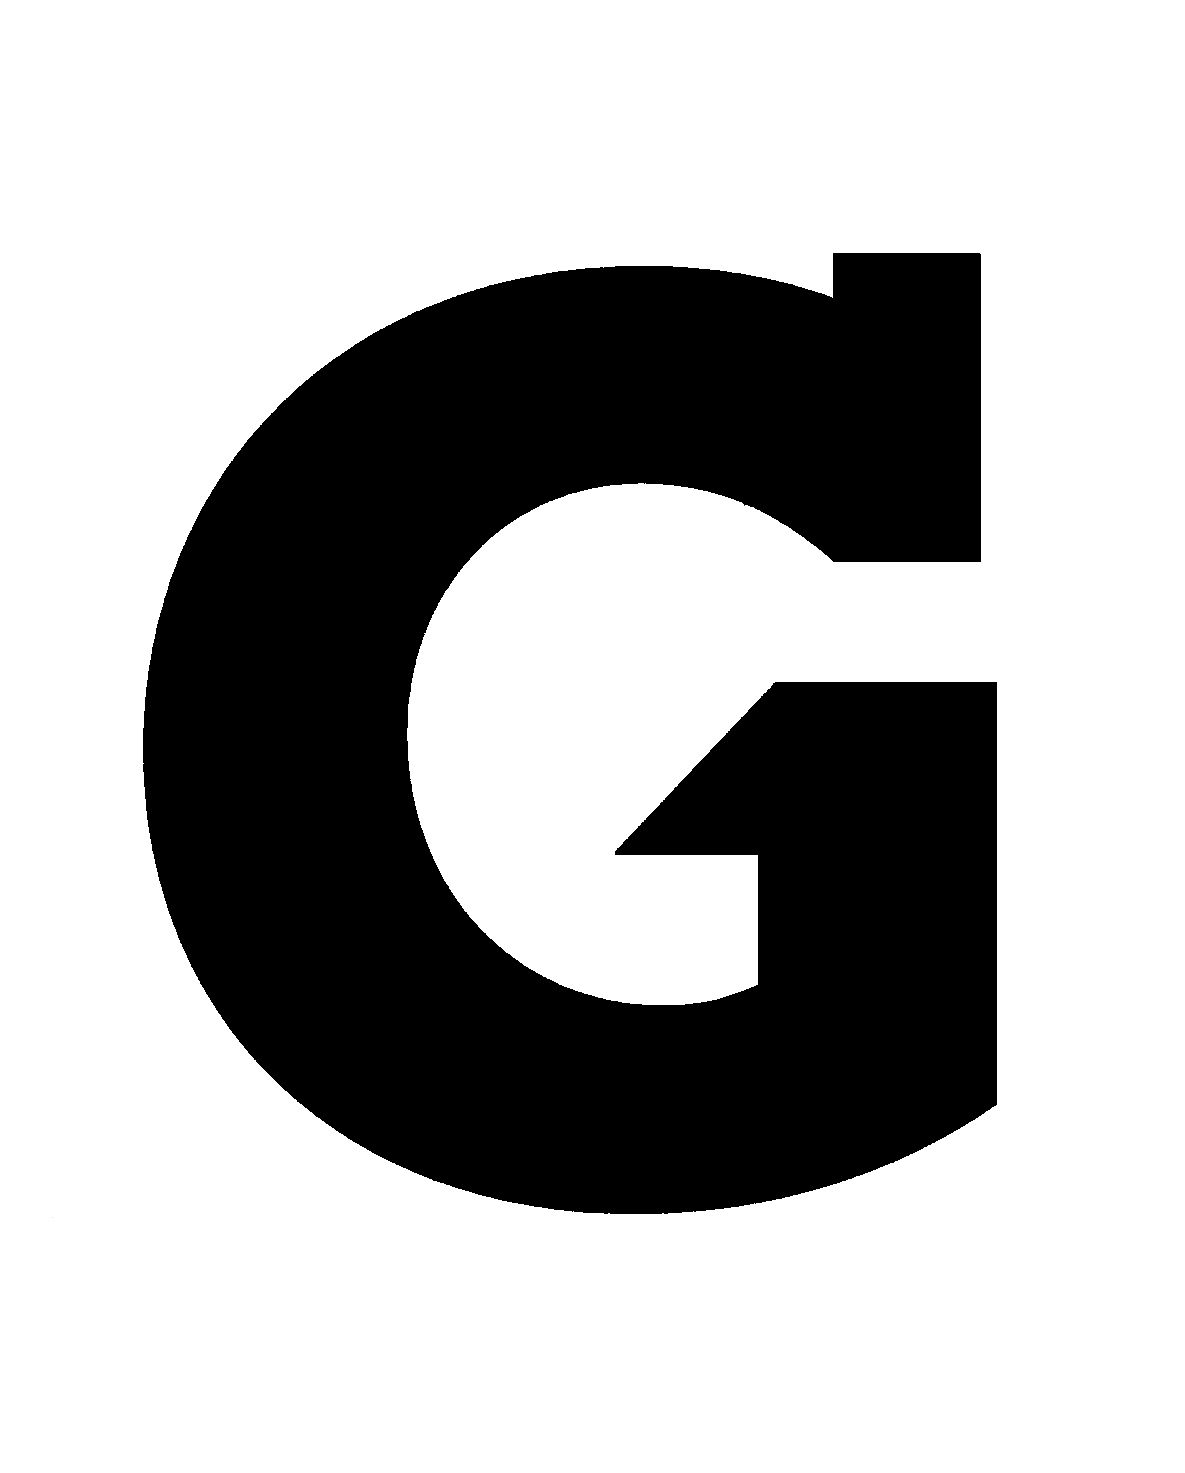 G Logo.com - ClipArt Best